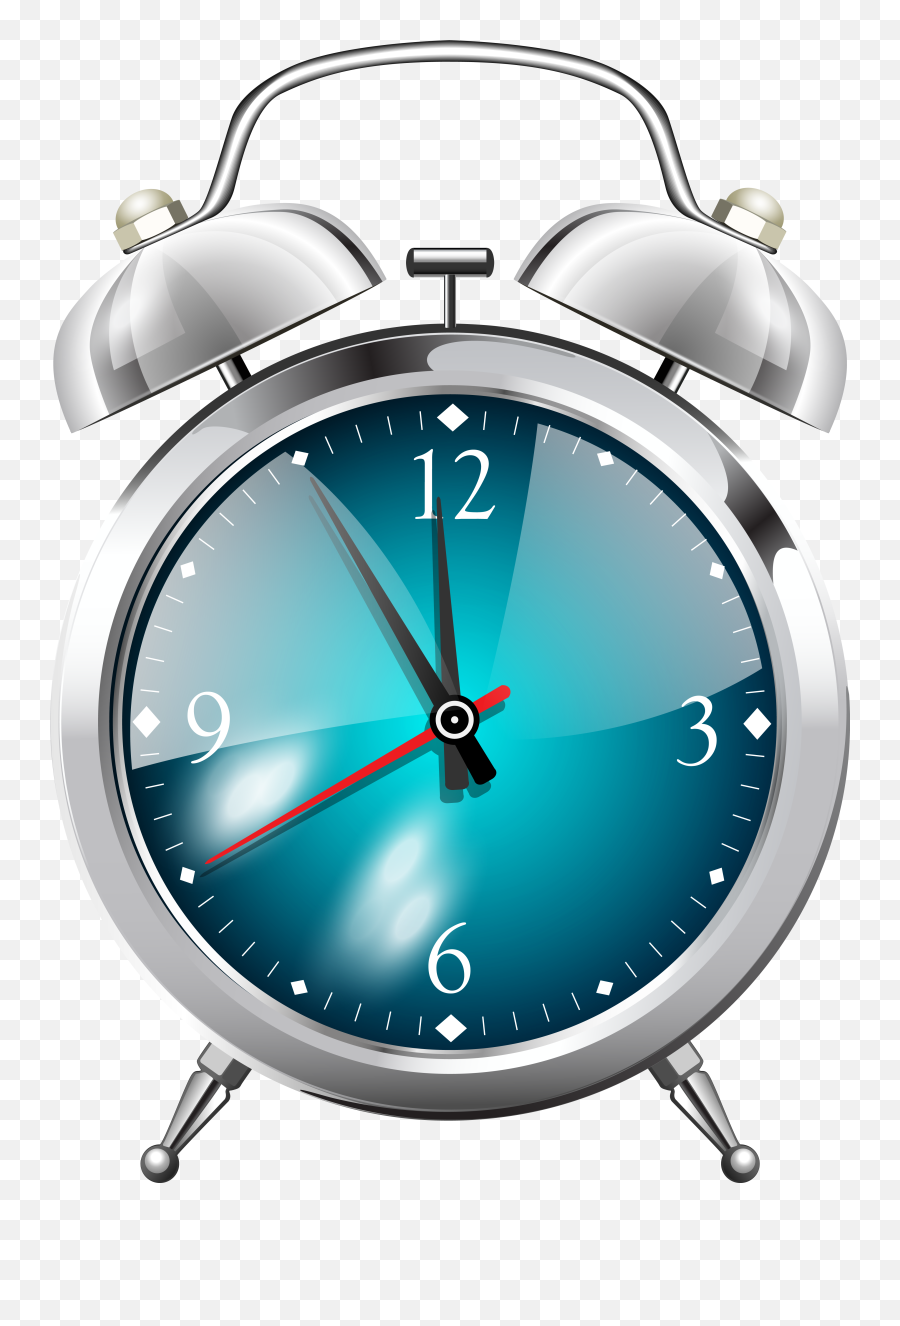 Png Images Pngs Alarm Clock Clocks - Clock Png Image Transparent Background Alarm Png Emoji,Emotion 'alarm Clock' Communication